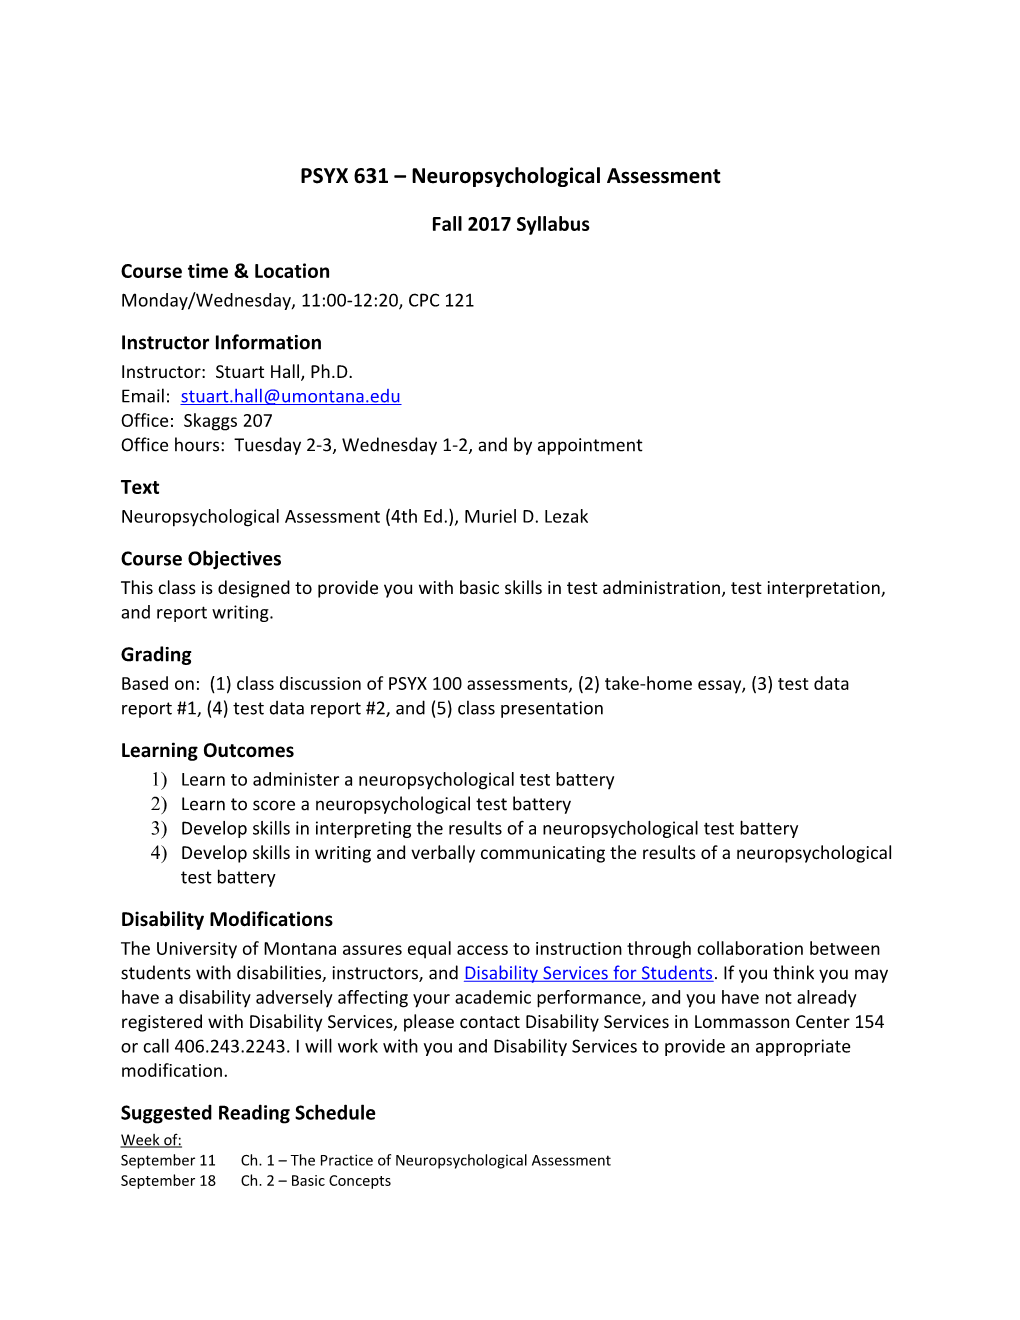 PSYX 631 Neuropsychological Assessment